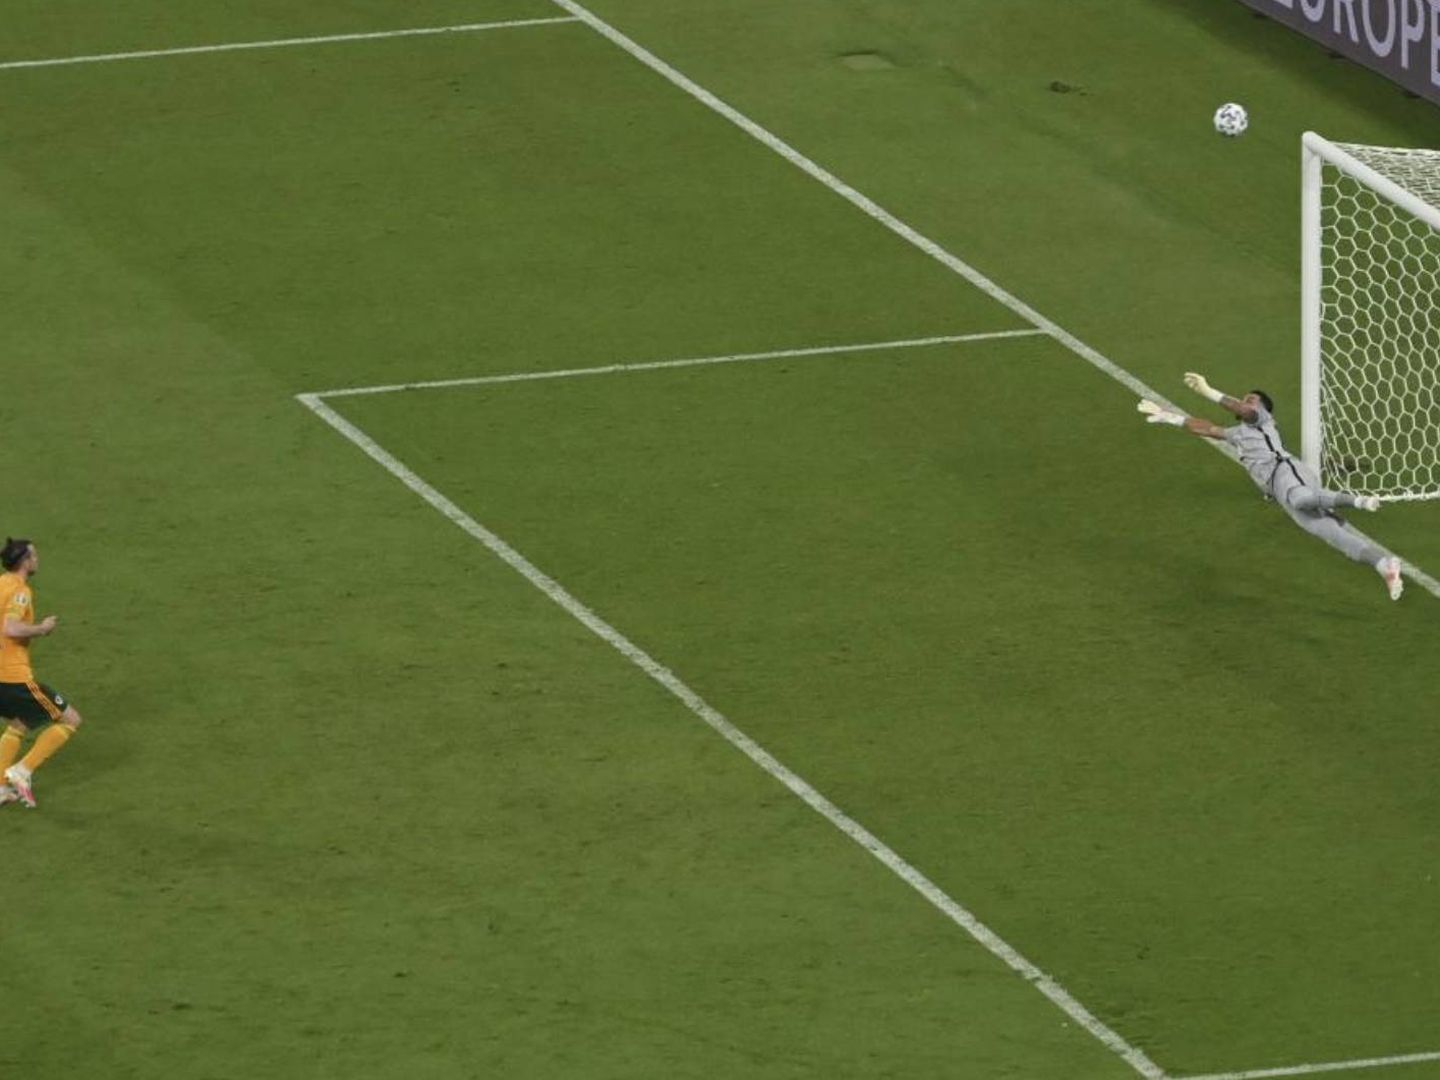 El lanzamiento de penalti alto de Bale.